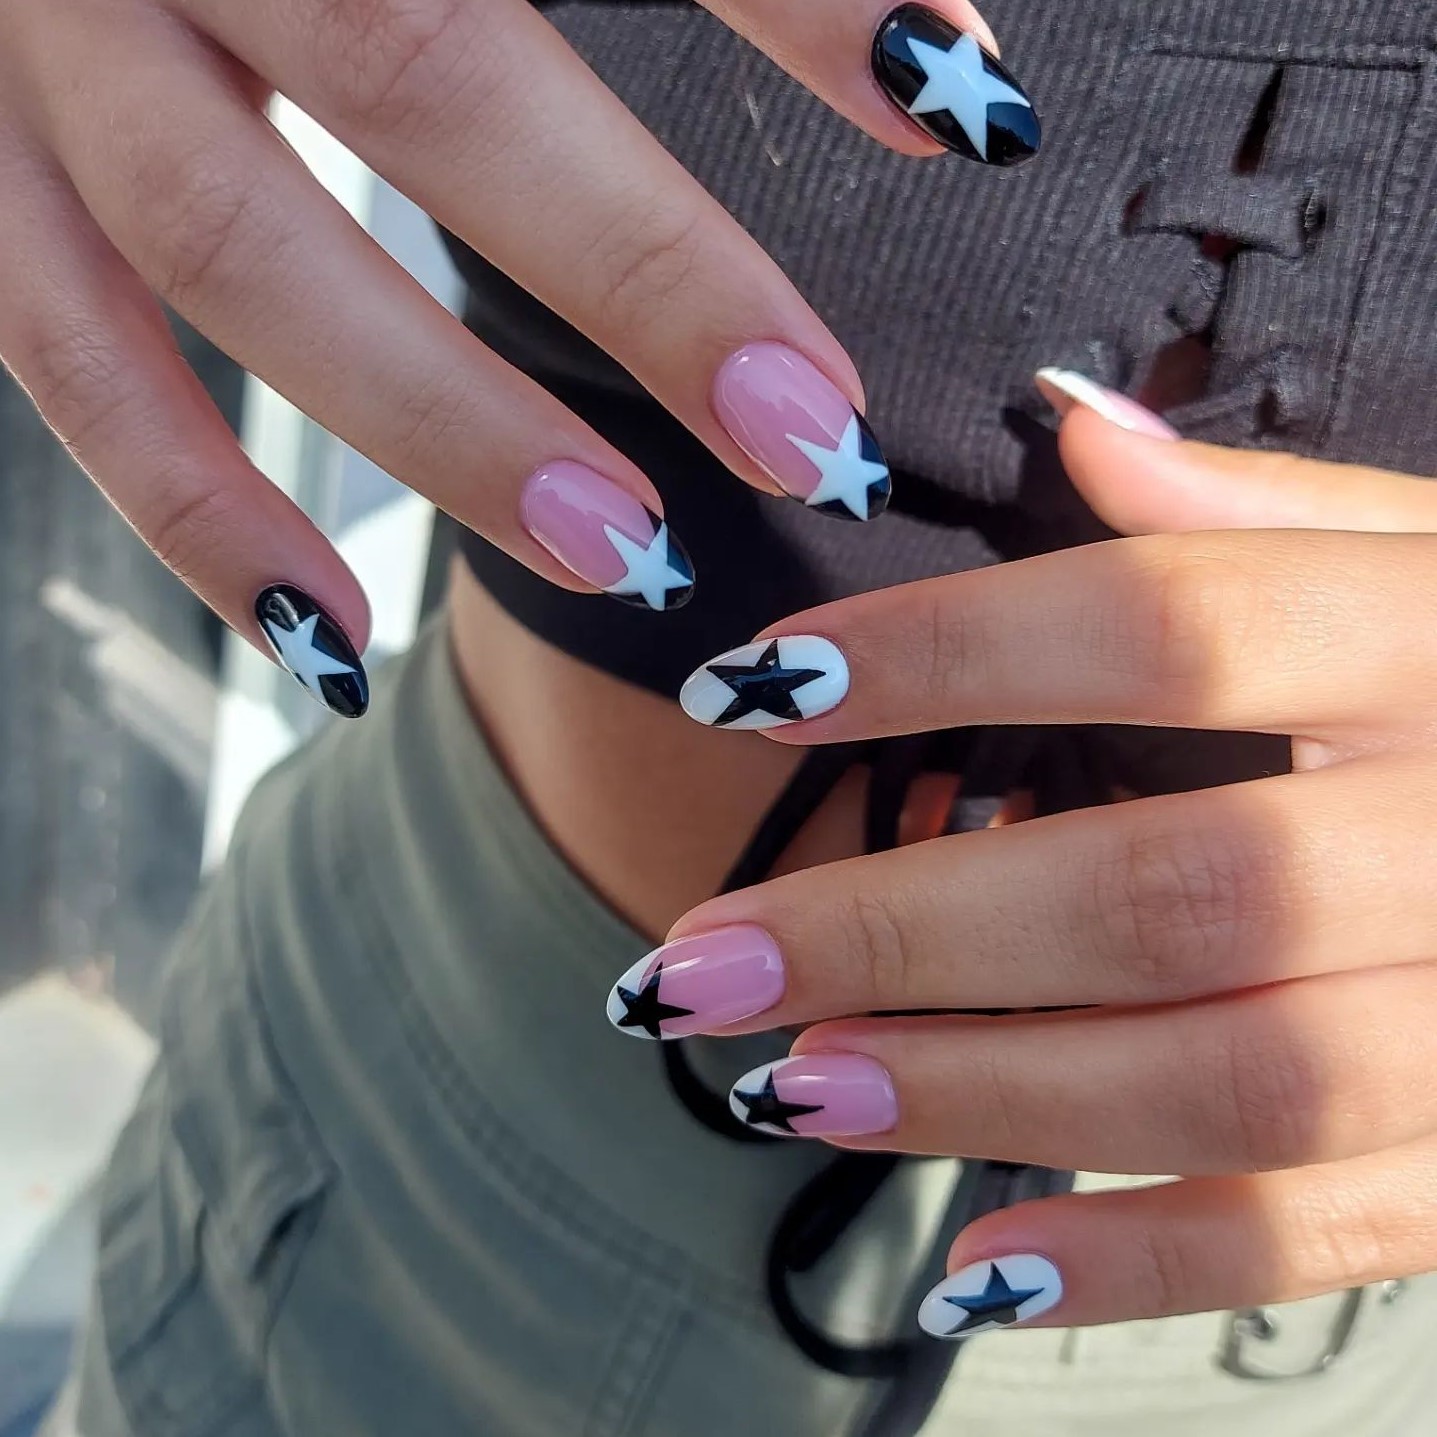 nails art  Stylish nails, Nail art, Les nails